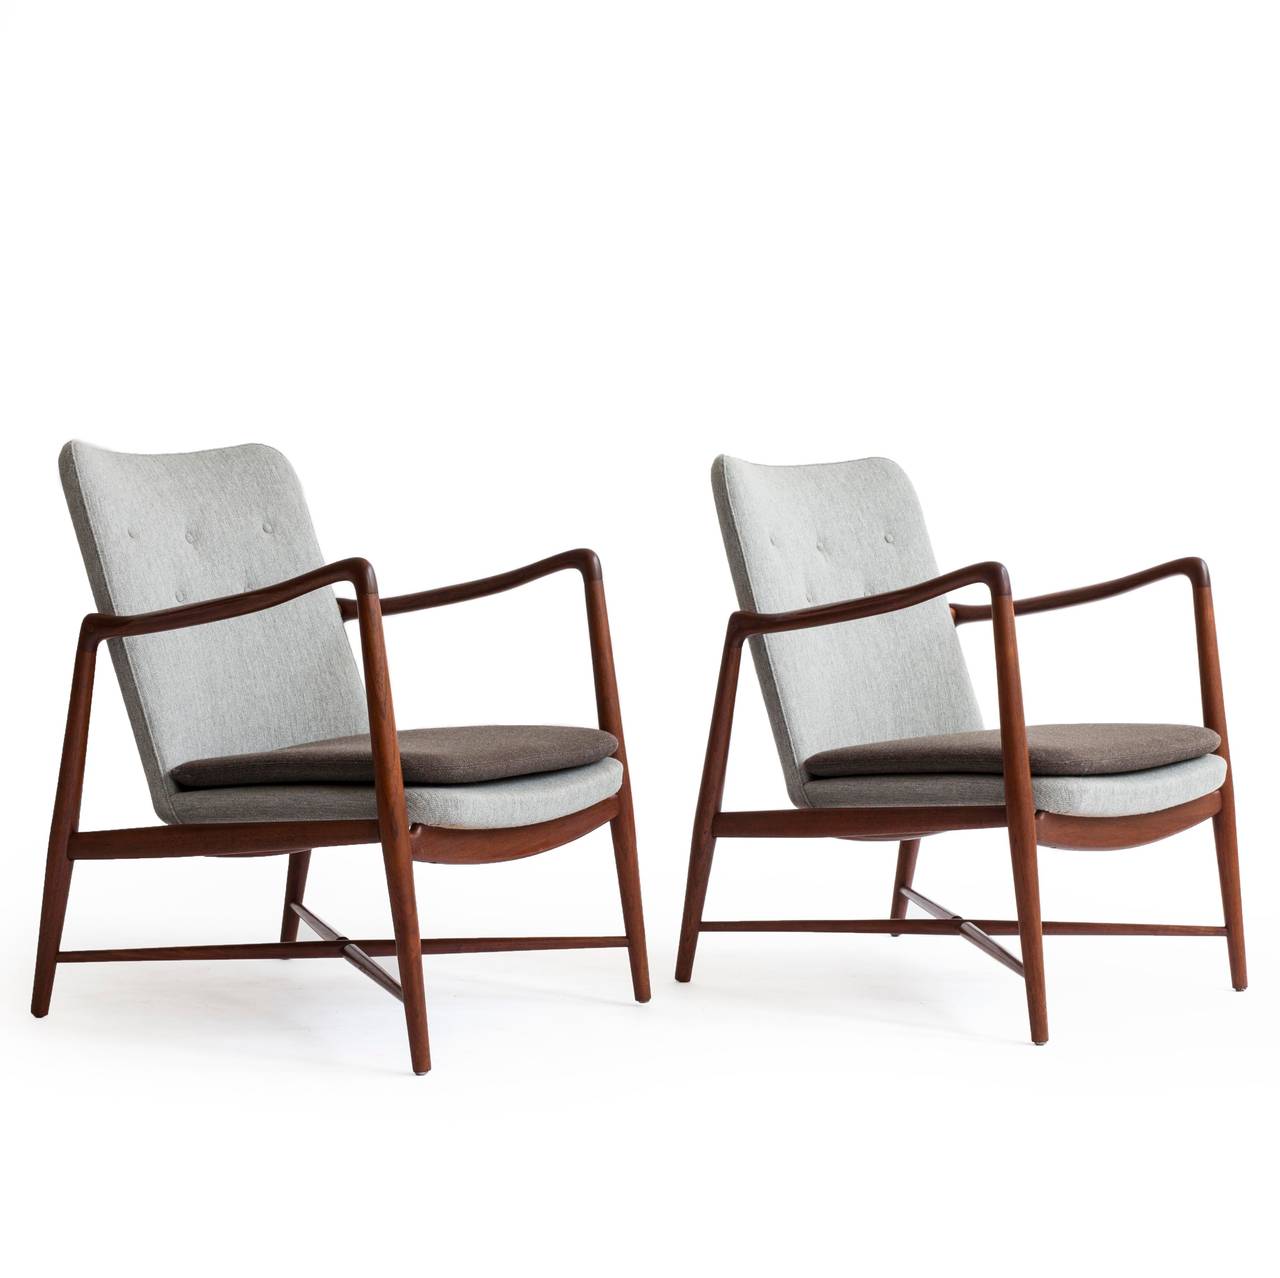 A pair of elegant Finn Juhl teak easy chairs with cross bars under seat. 

Frame of teak and new two-tone wool upholstery. 

Designed by Finn Juhl 1946 for Bovirke, Denmark, model BO59.